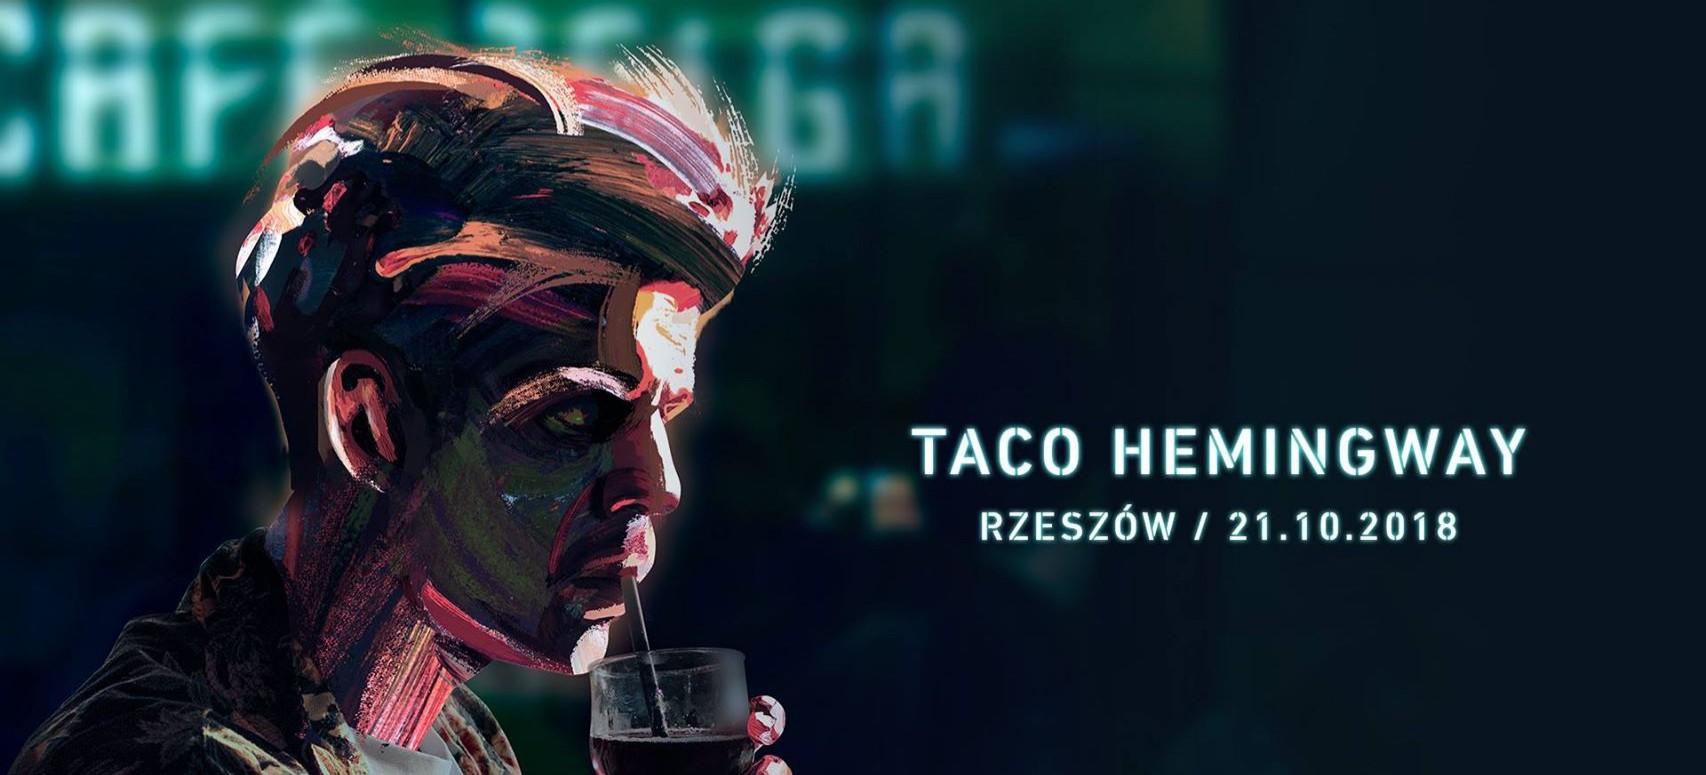 NIEDZIELA: Taco Hemingway w Rzeszowie